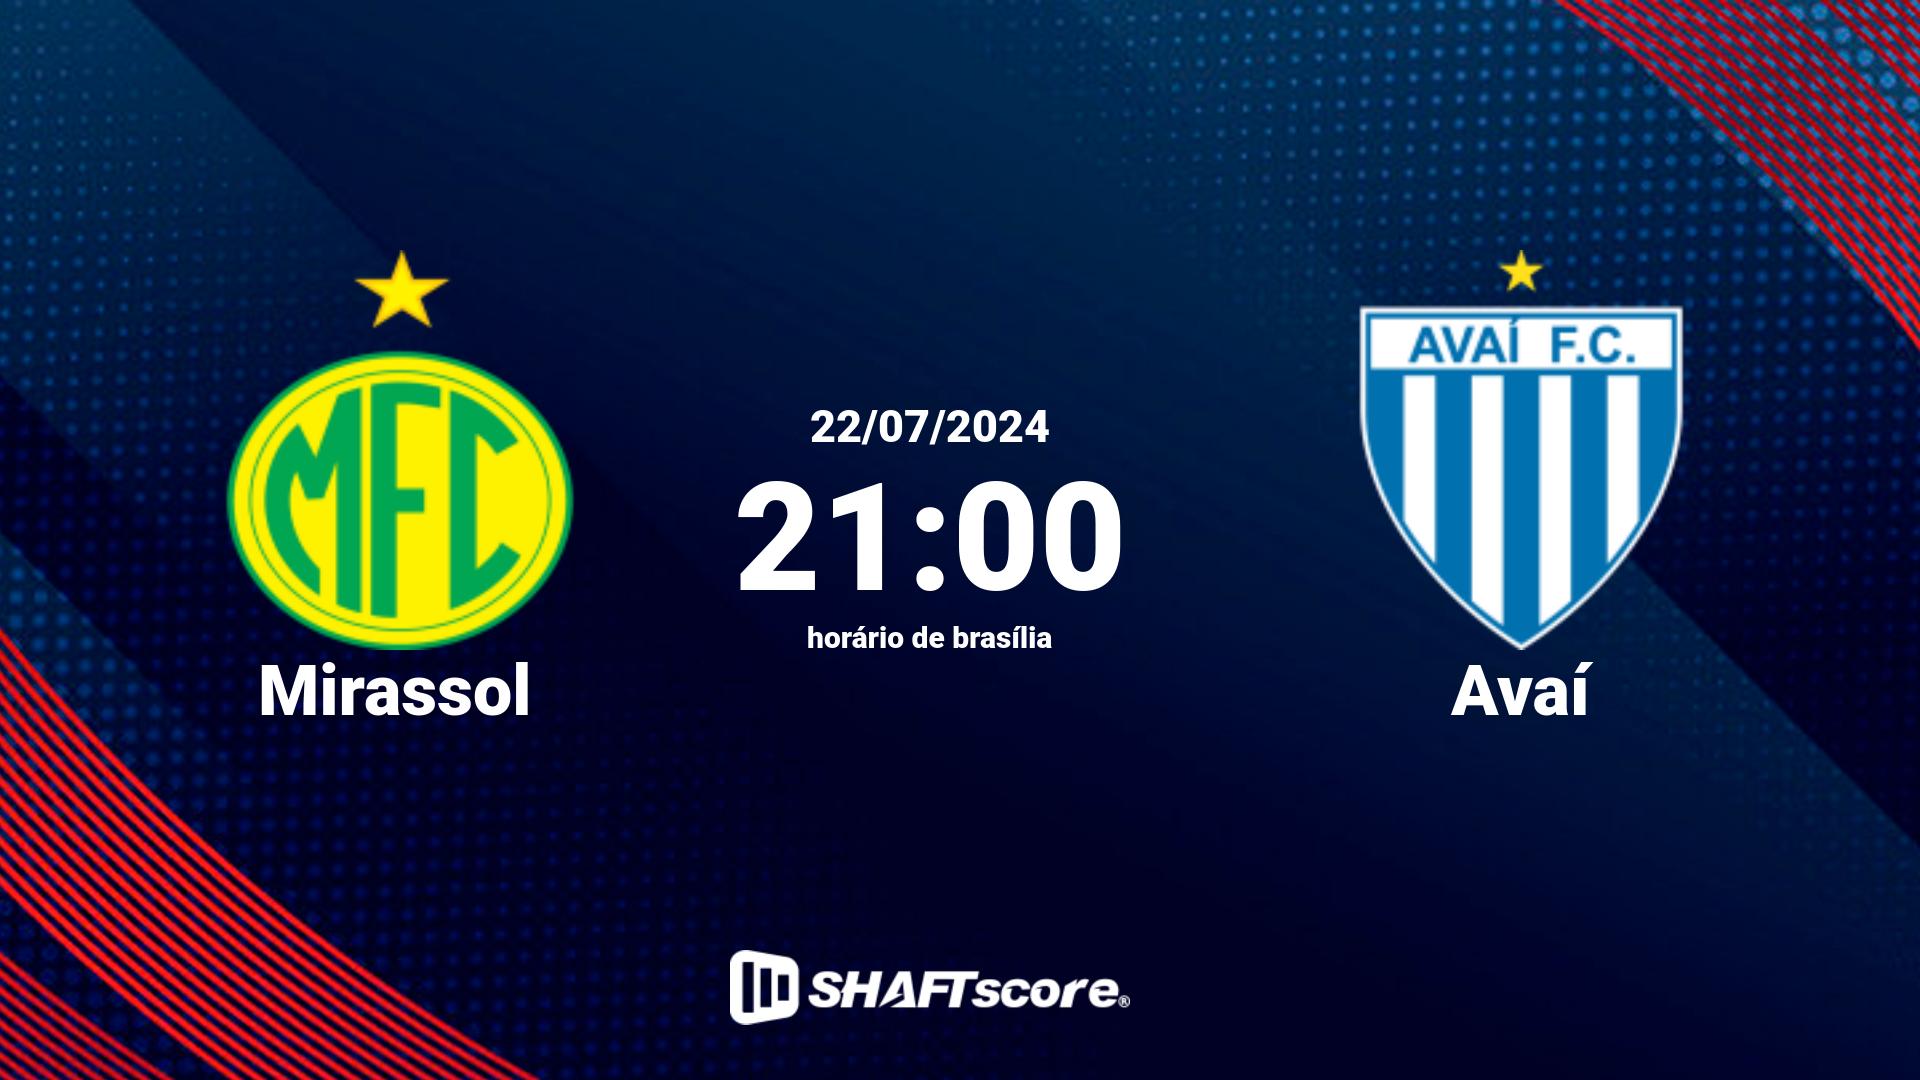 Estatísticas do jogo Mirassol vs Avaí 22.07 21:00